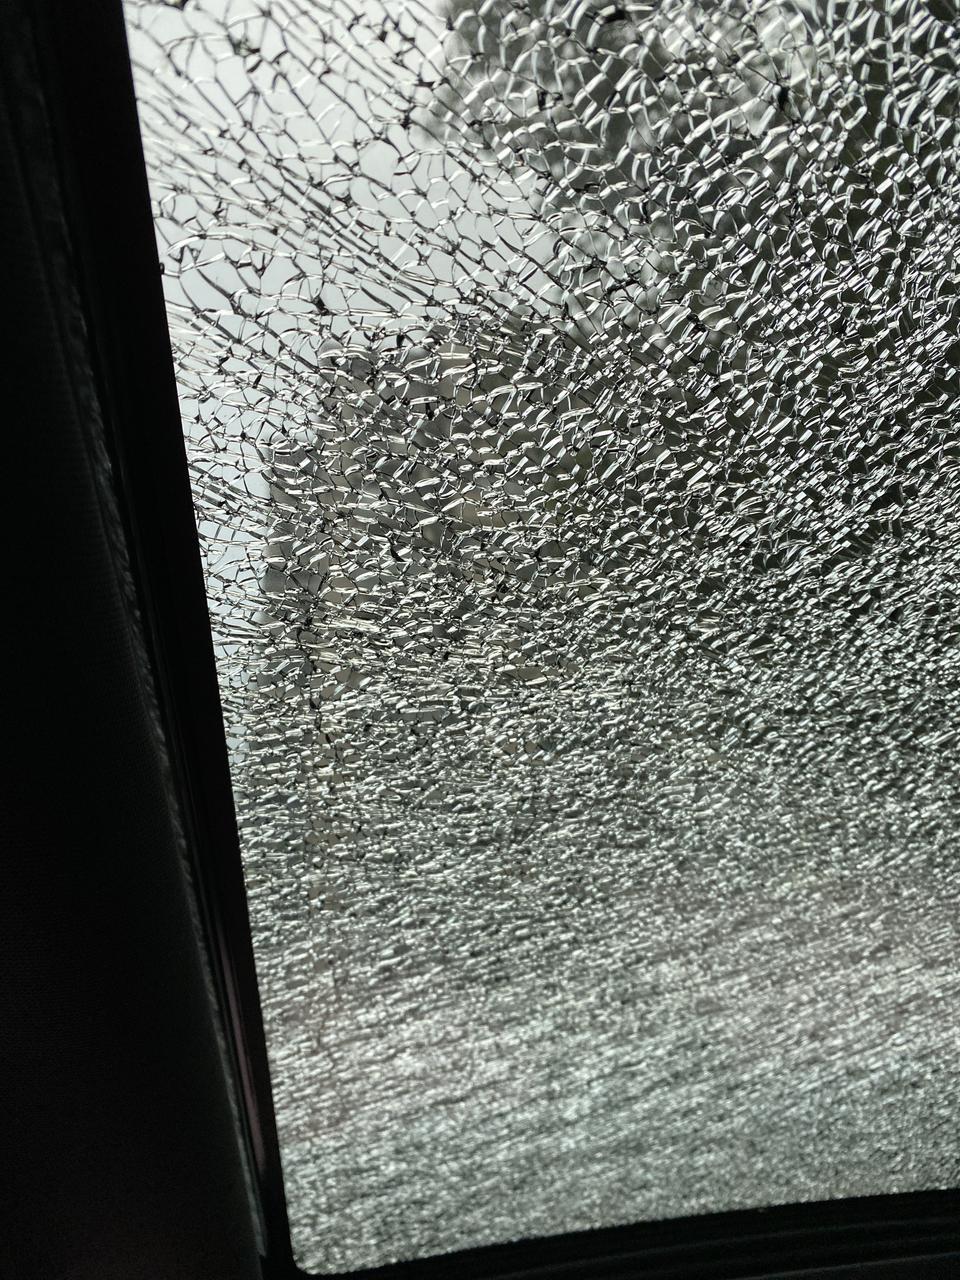 缤越刚买了三个月的新车 天窗玻璃碎了 怎么办。4s店负责吗